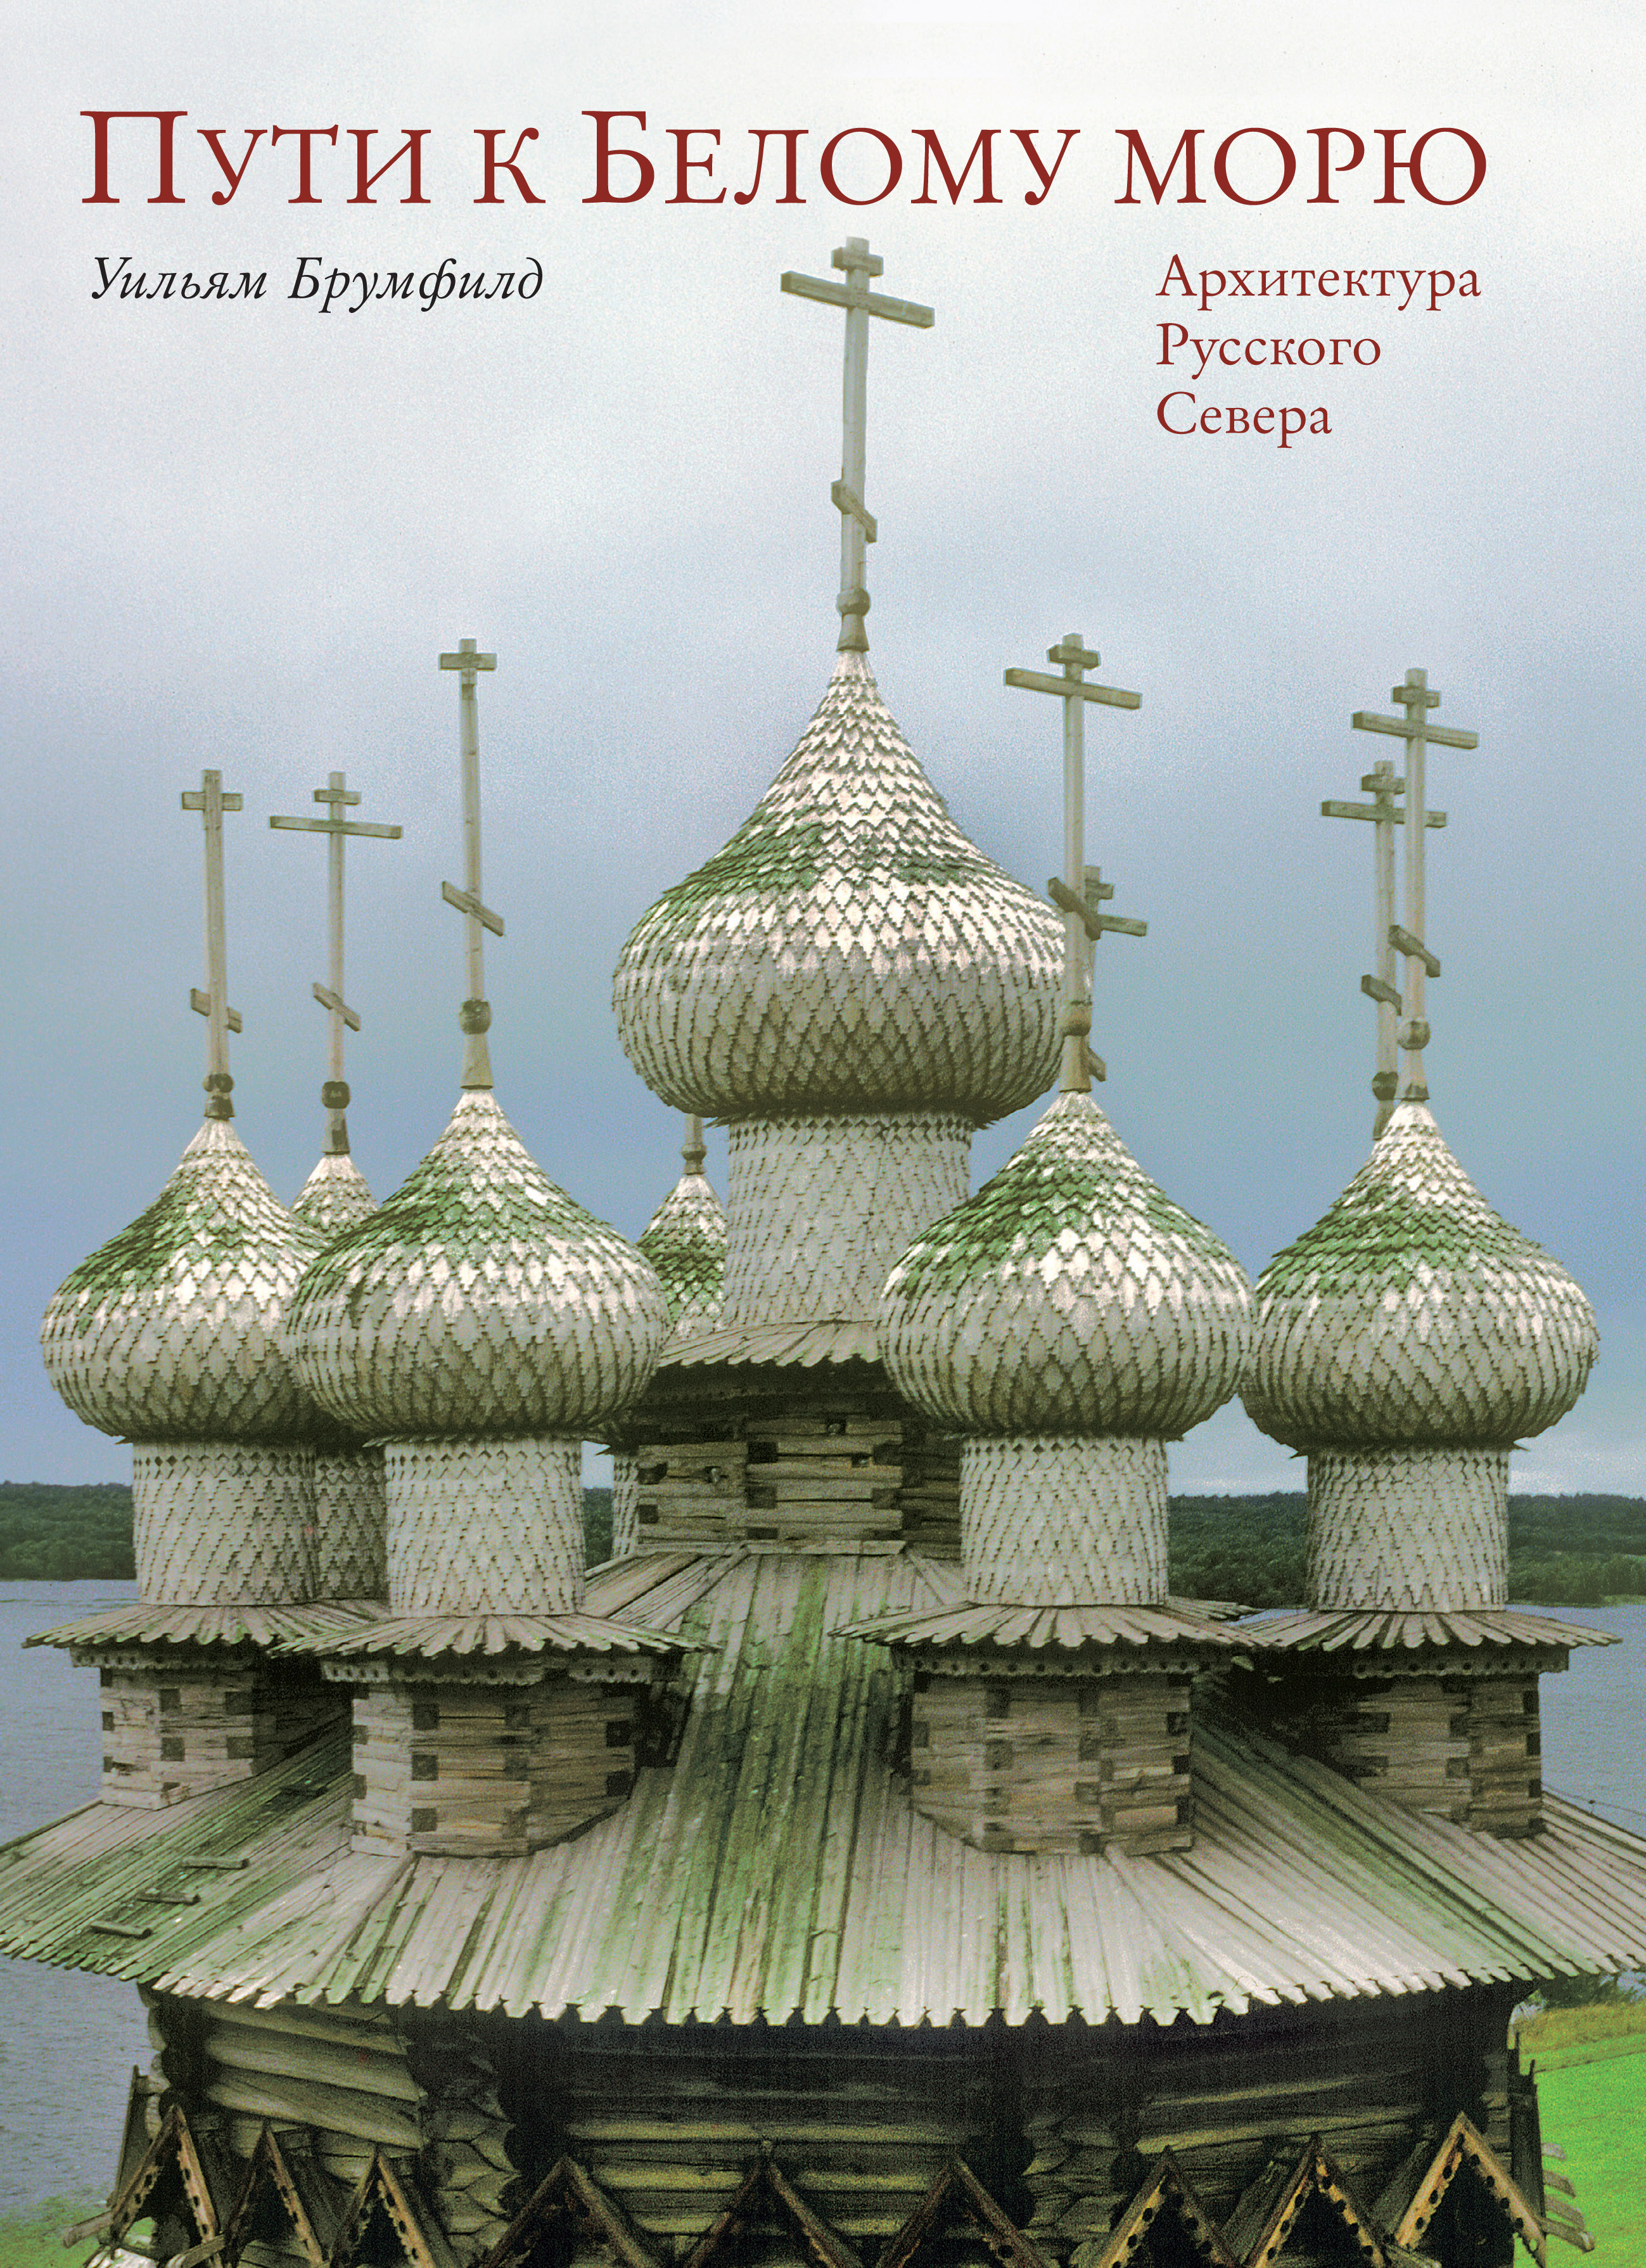 Иллюстрация: Уильям Брумфилд. Презентация книги «Пути к Белому морю: Архитектура Русского Севера»